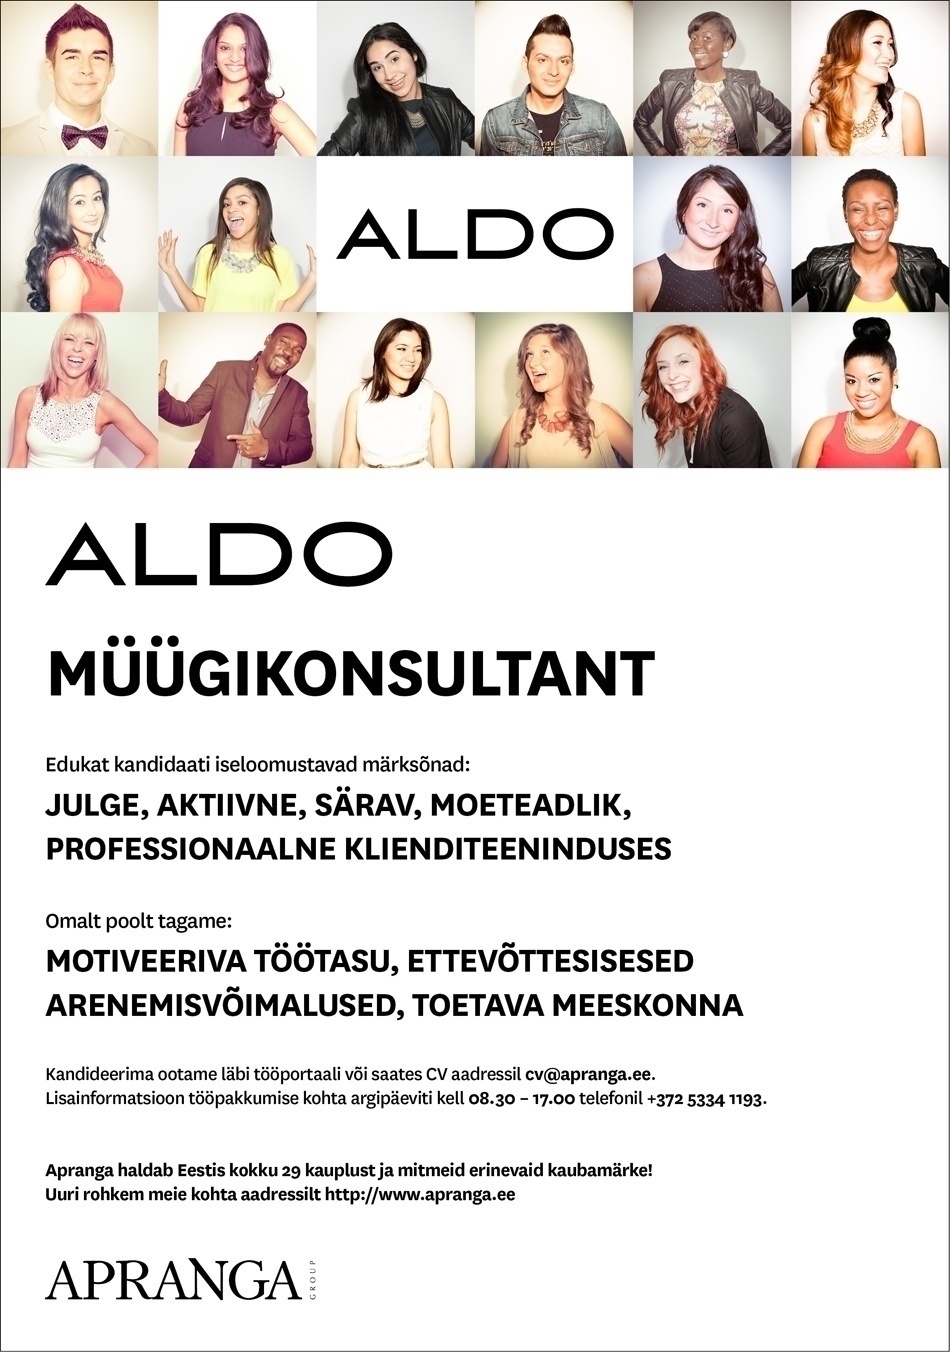 Apranga Estonia OÜ ALDO professionaalne müügikonsultant